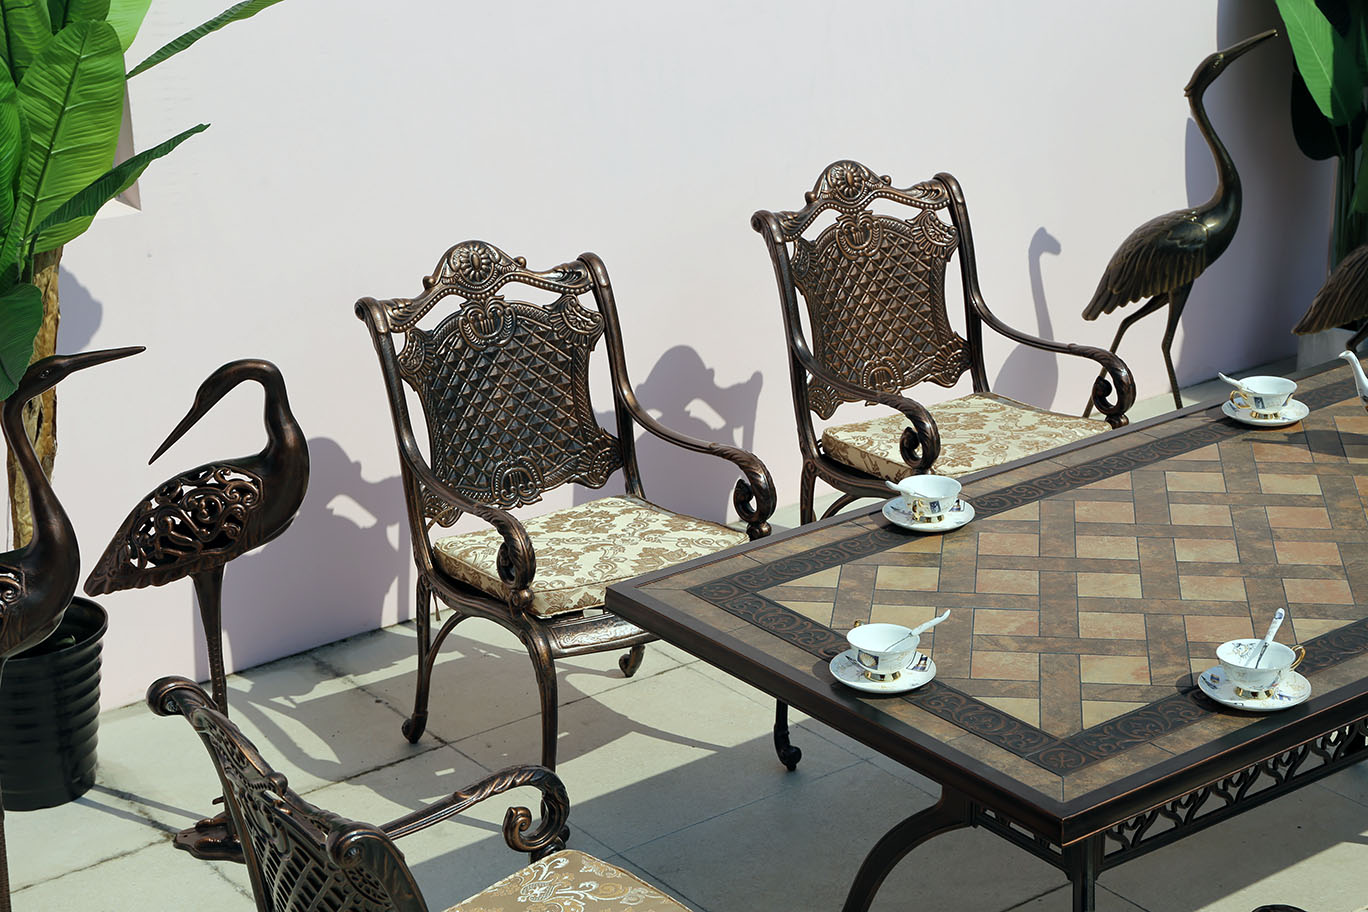 Литые чугунные кресла Дженерал из сплава алюминия, элитная кованая мебель для загородного дома, обеденный стол с керамической плиткой, уличная мебель для летних веранд кафе, стол с мозаикой в столовую на дачу